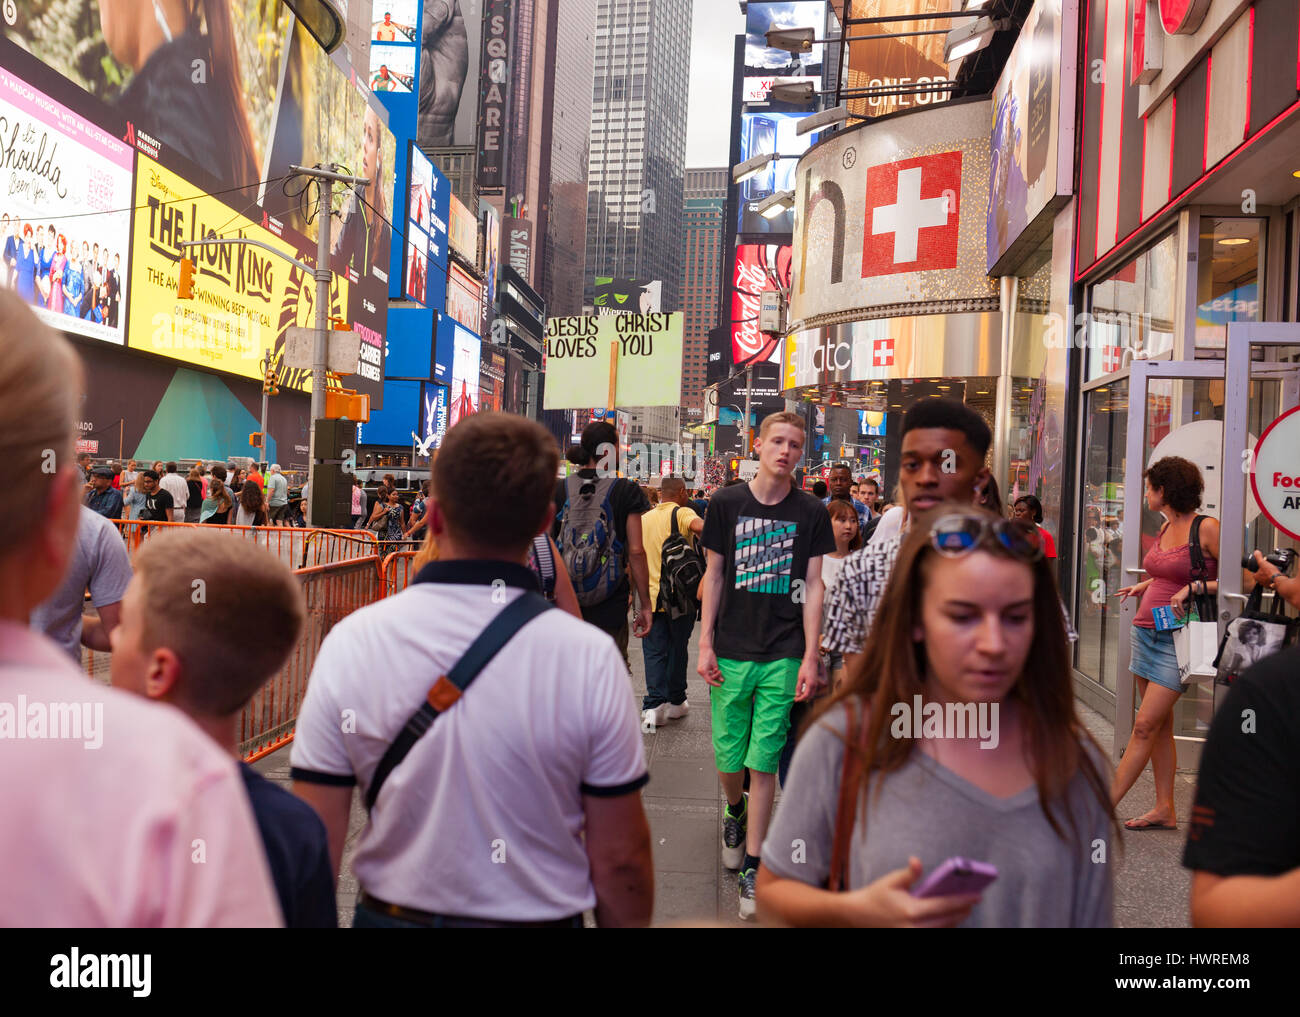 La città di New York, Stati Uniti d'America - Luglio 19, 2015: uomo che porta un cartello che recita "Convertitevi Gesù vi ama" in Times Square Foto Stock